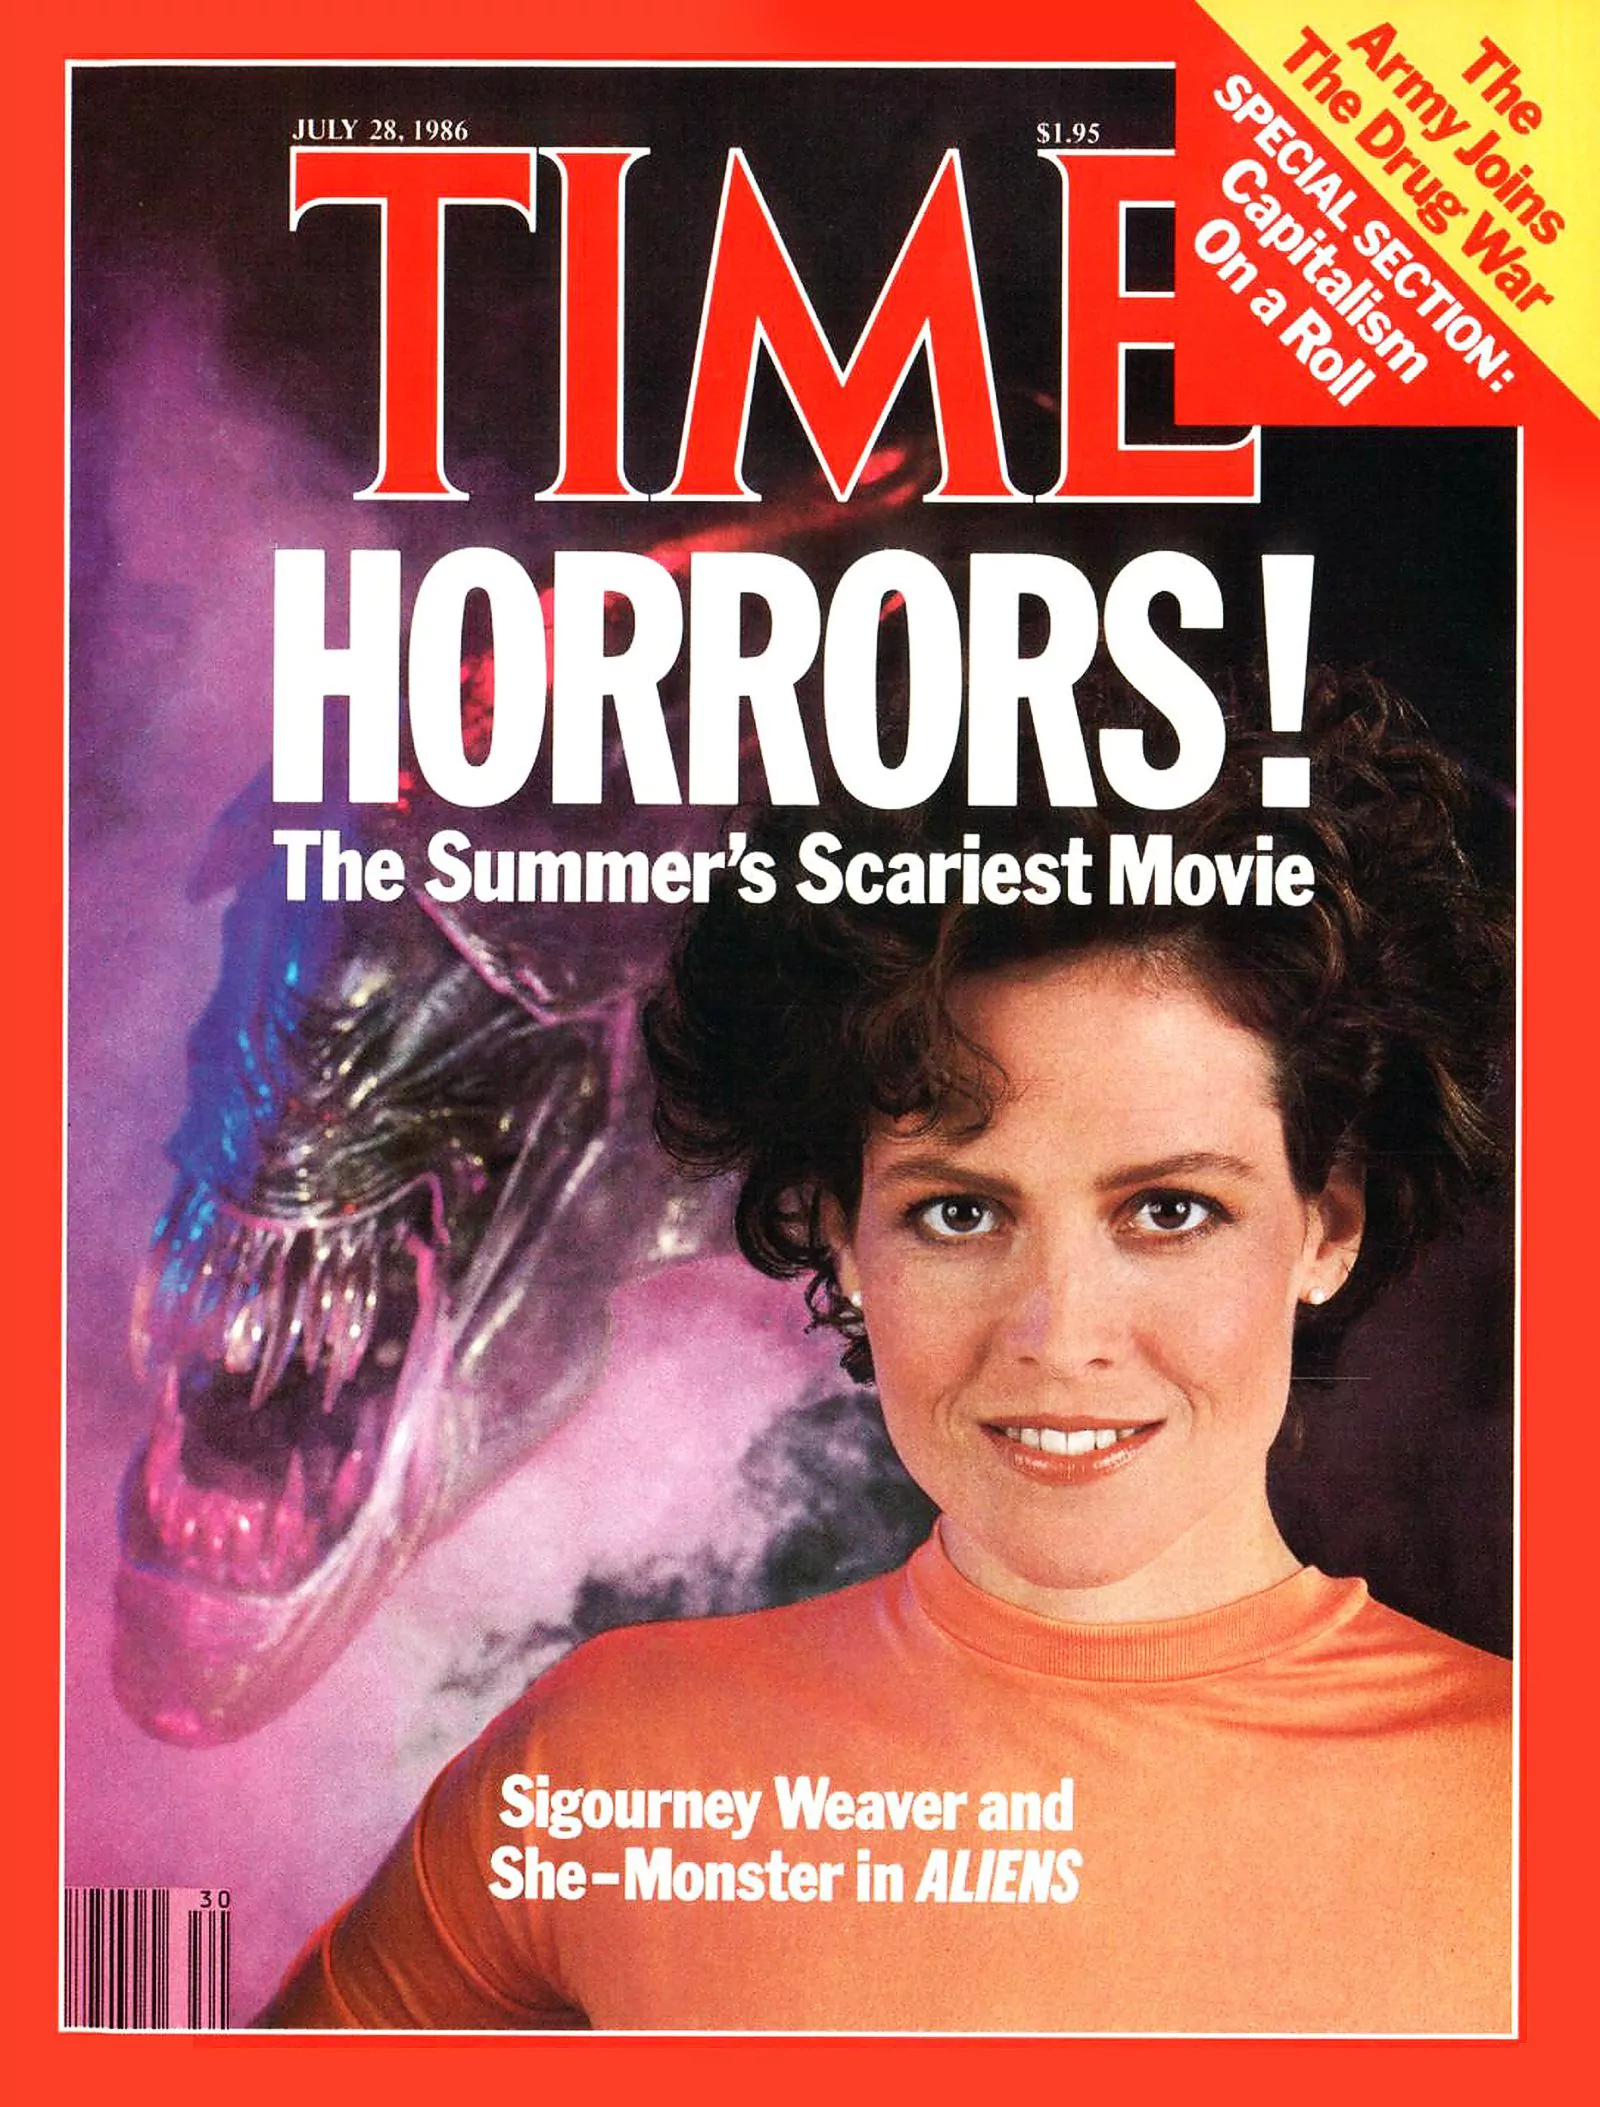 Сигурни Уивер на обложке журанала Time Magazine, 28 июля 1986 г.